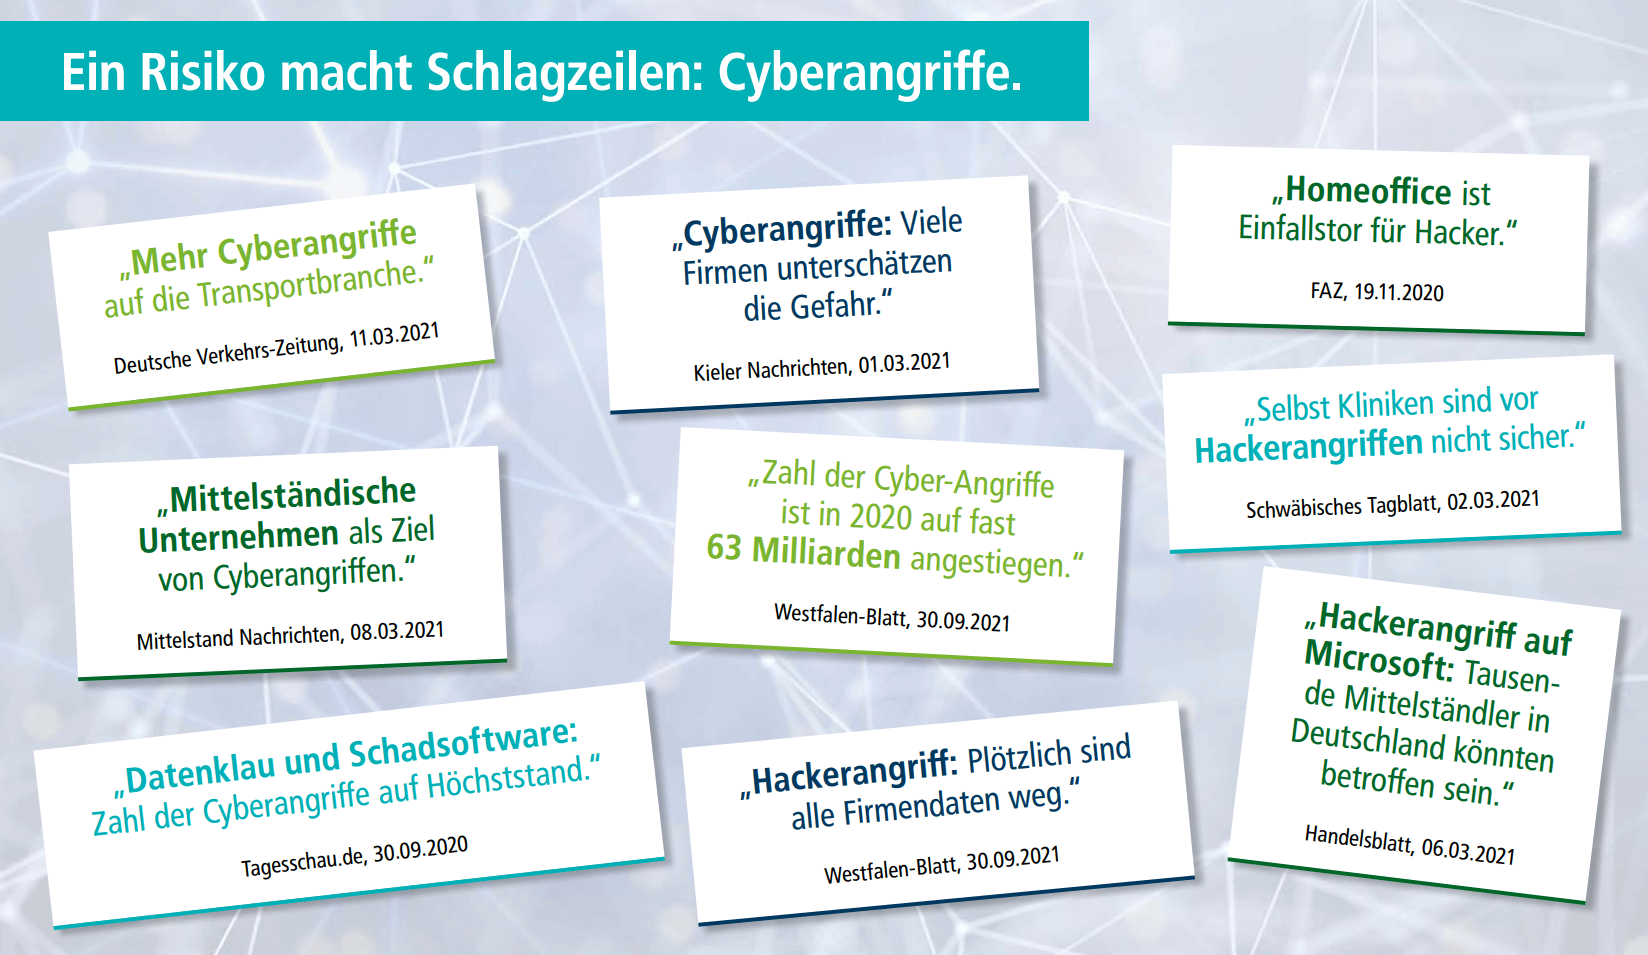 Presseauszüge zu Cyberangriffen in Deutschland 2020 bis 2021